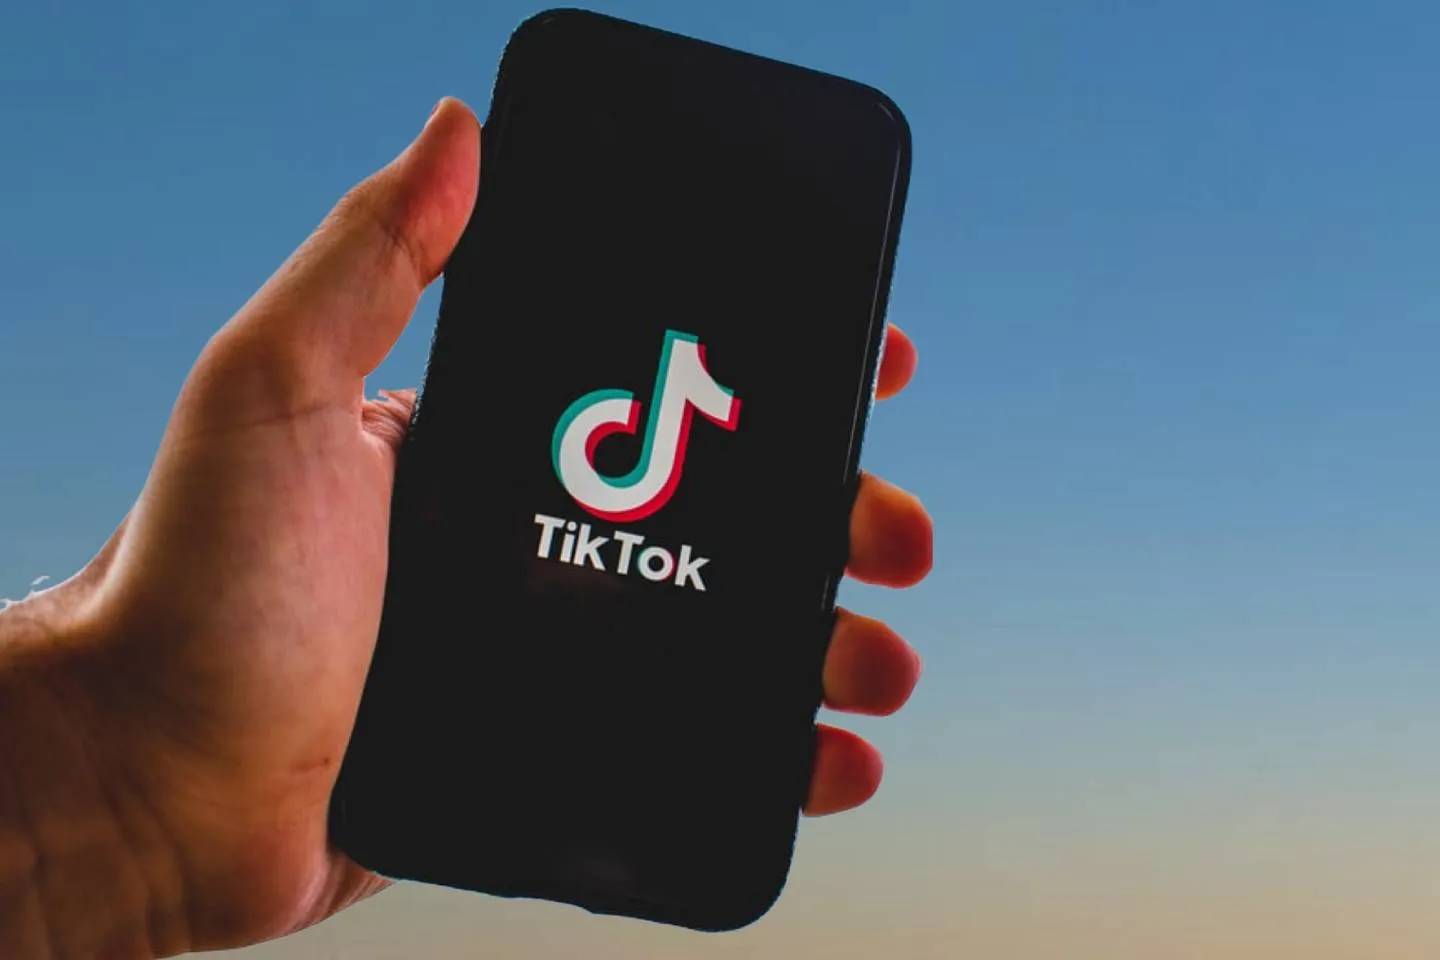 Новости мира / Интересные новости / Американская компания готова платить деньги людям за просмотр TikTok